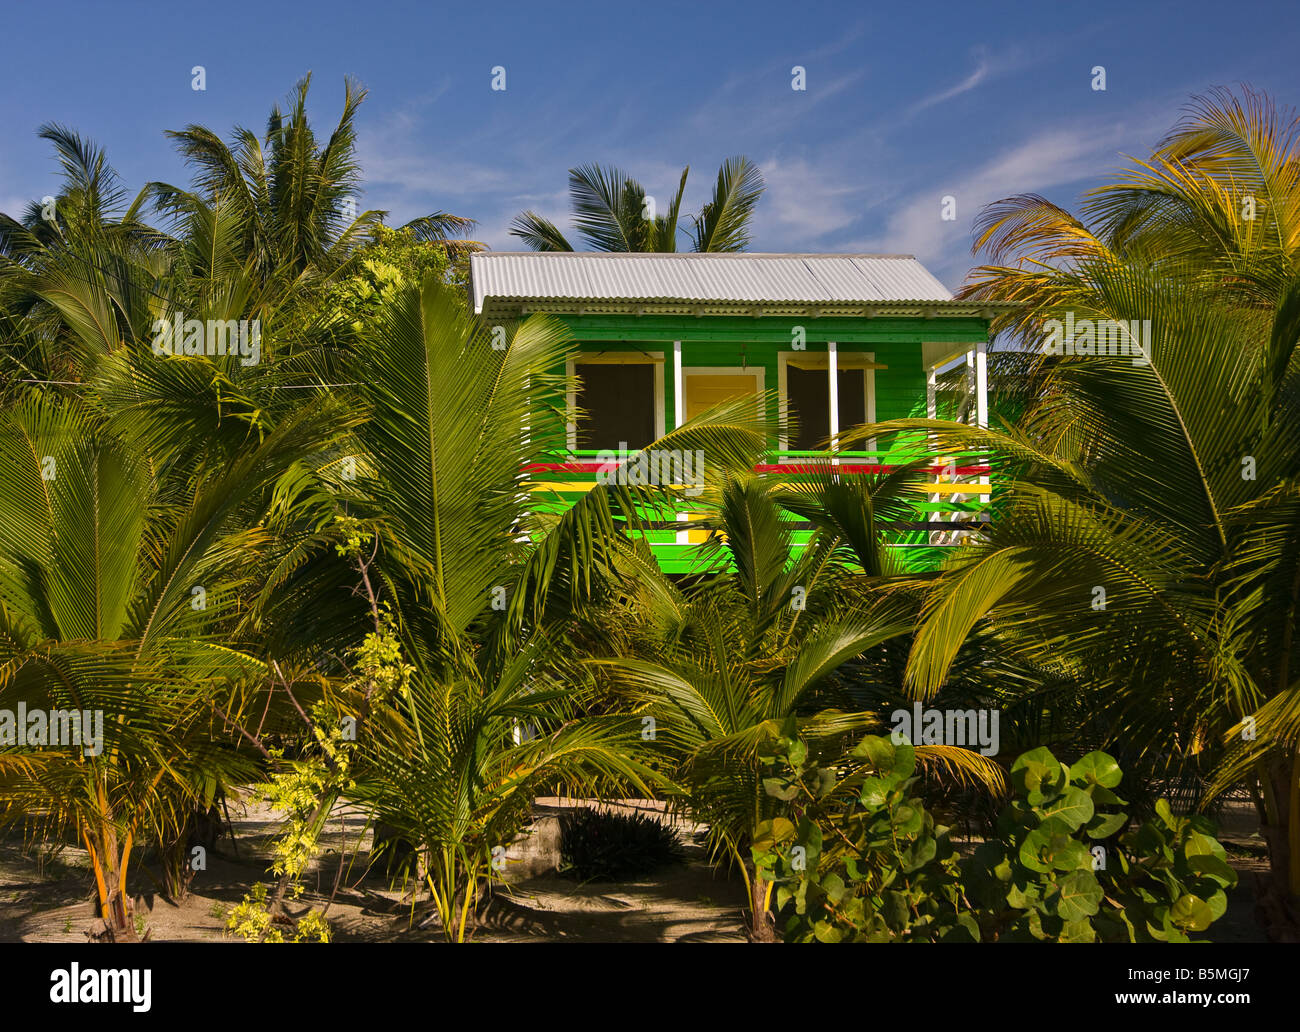 CAYE CAULKER BELIZE - Green cottage on stilts nestled among palm trees Stock Photo